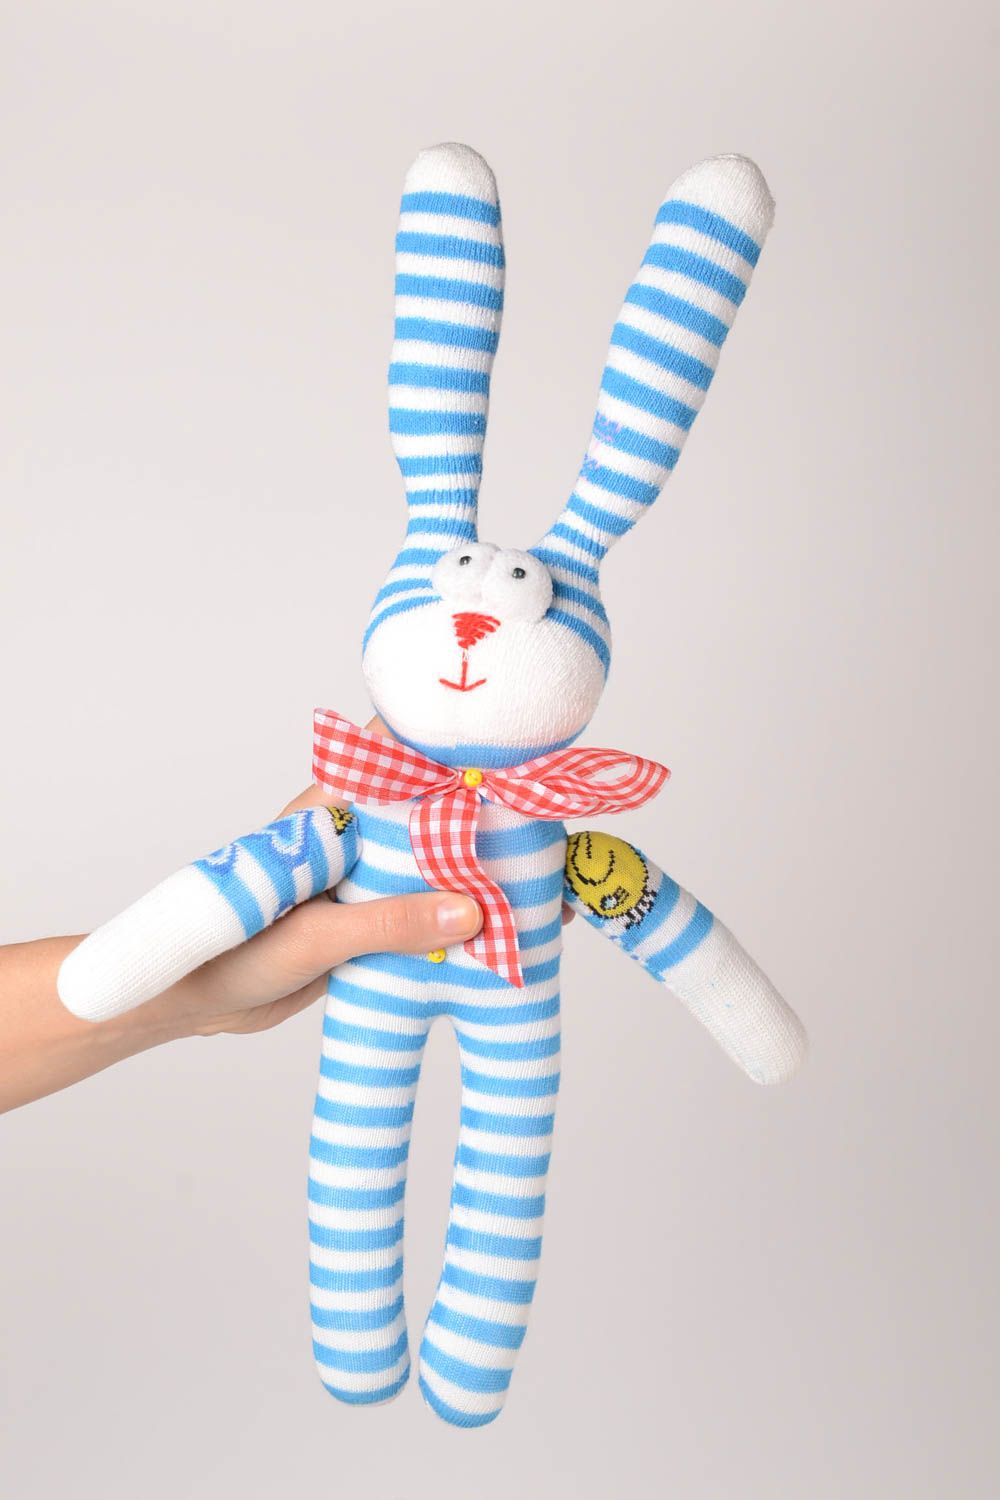 Детская игрушка ручной работы игрушка-животное мягкая игрушка полосатый зайчик фото 2